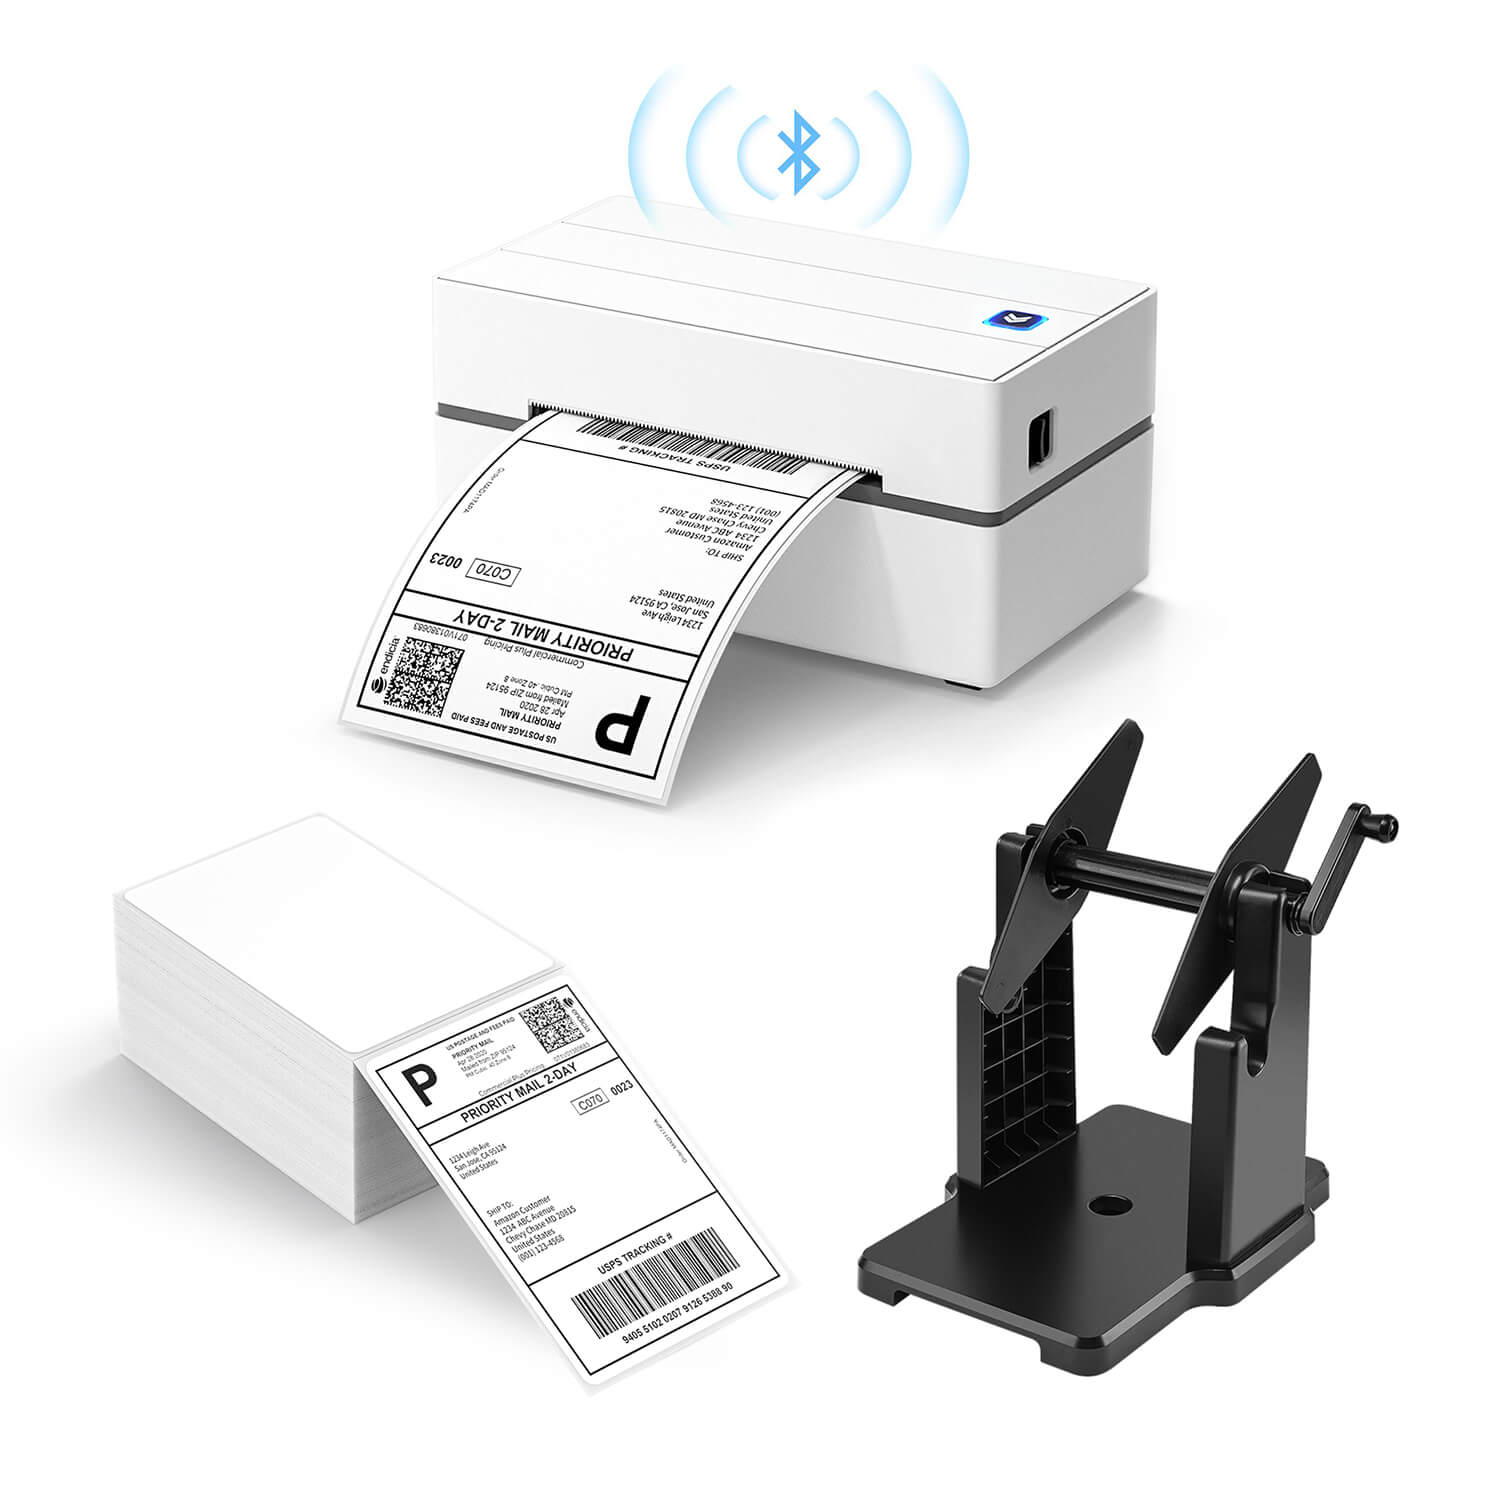 MUNBYN Bluetooth Thermal Label Printer P130B Starter Kit